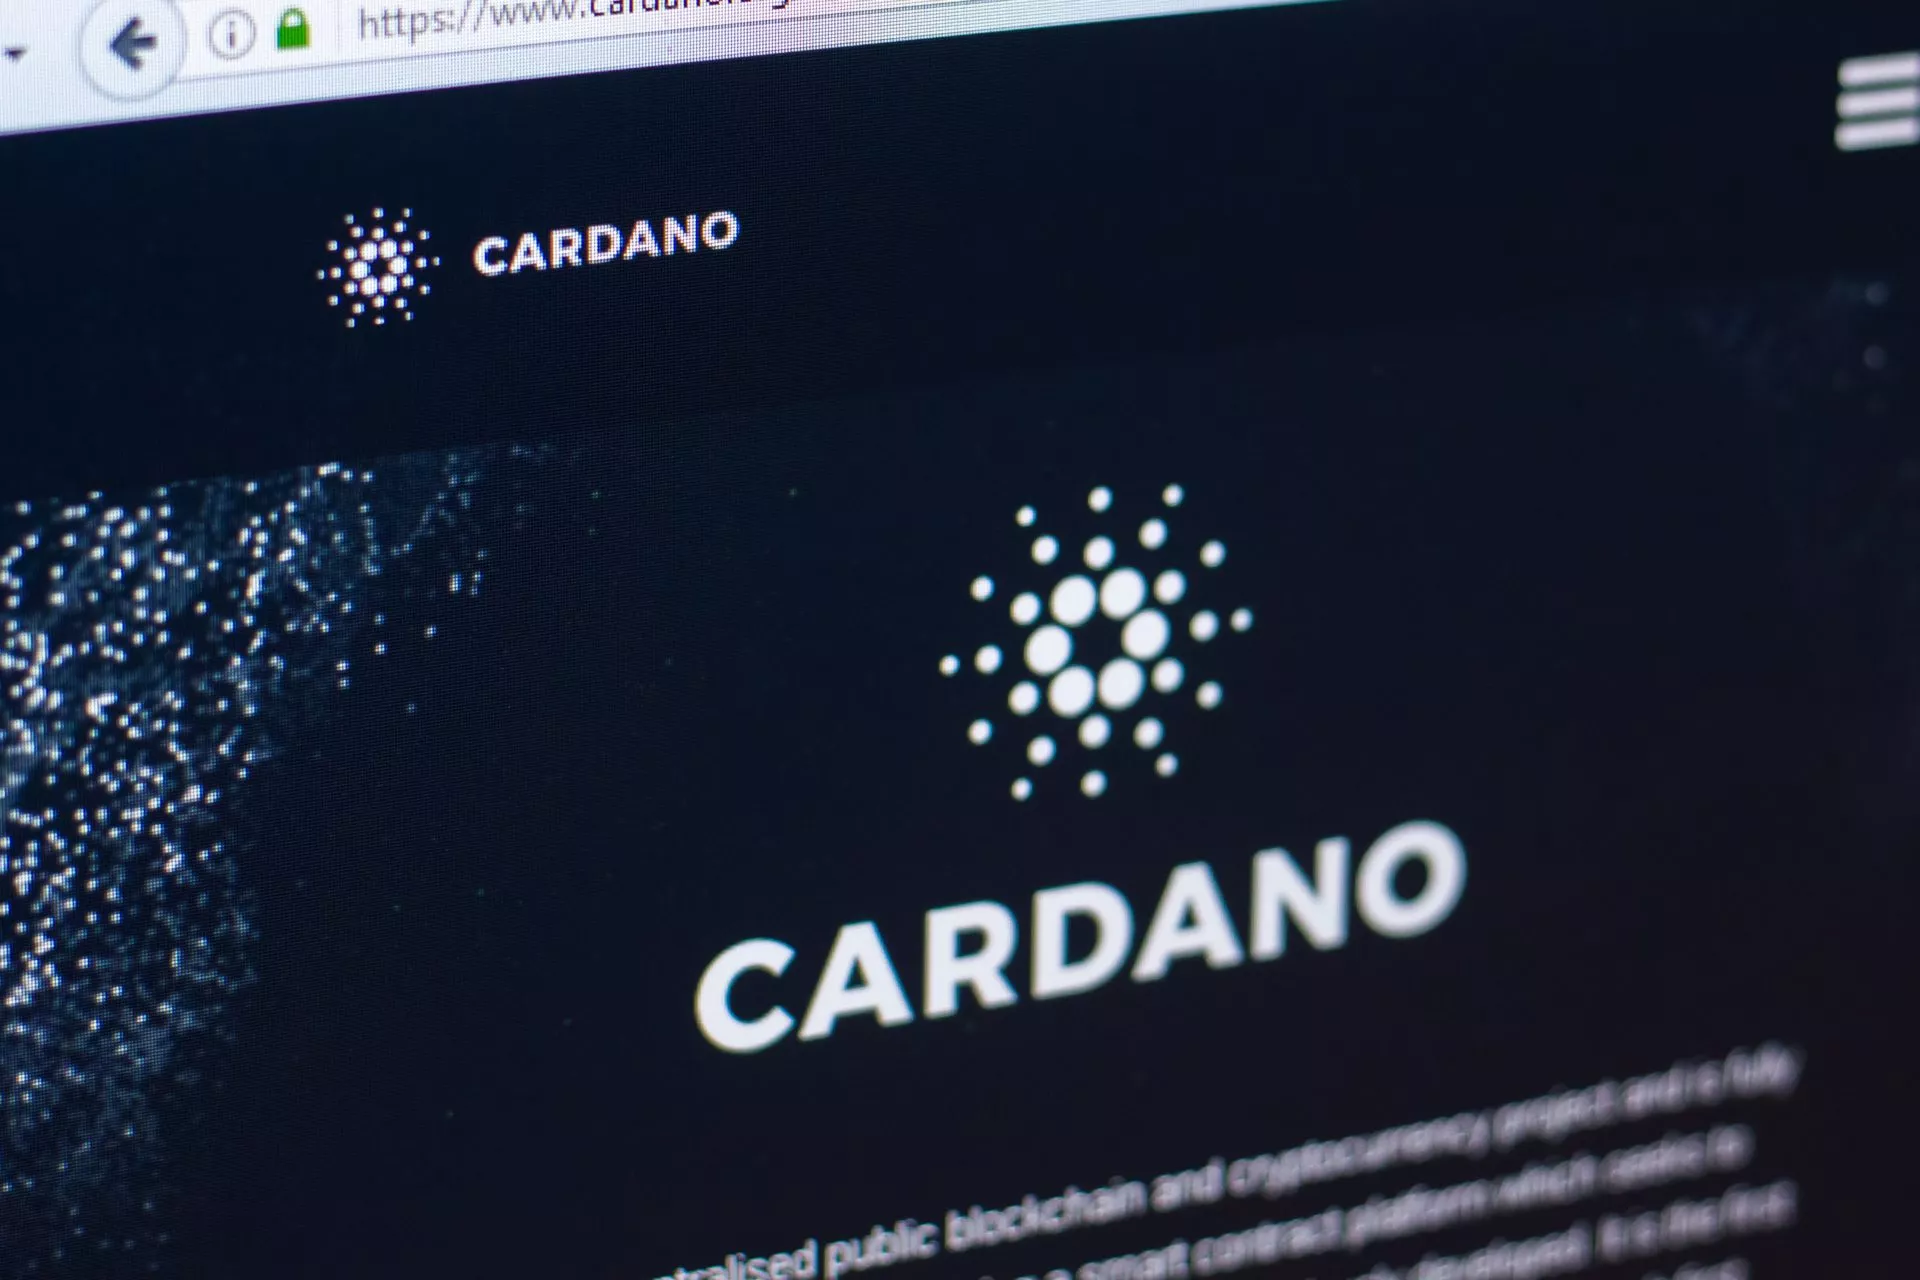 Oprichter Crypto Capital Venture: ‘Cardano kan $10 bereiken’